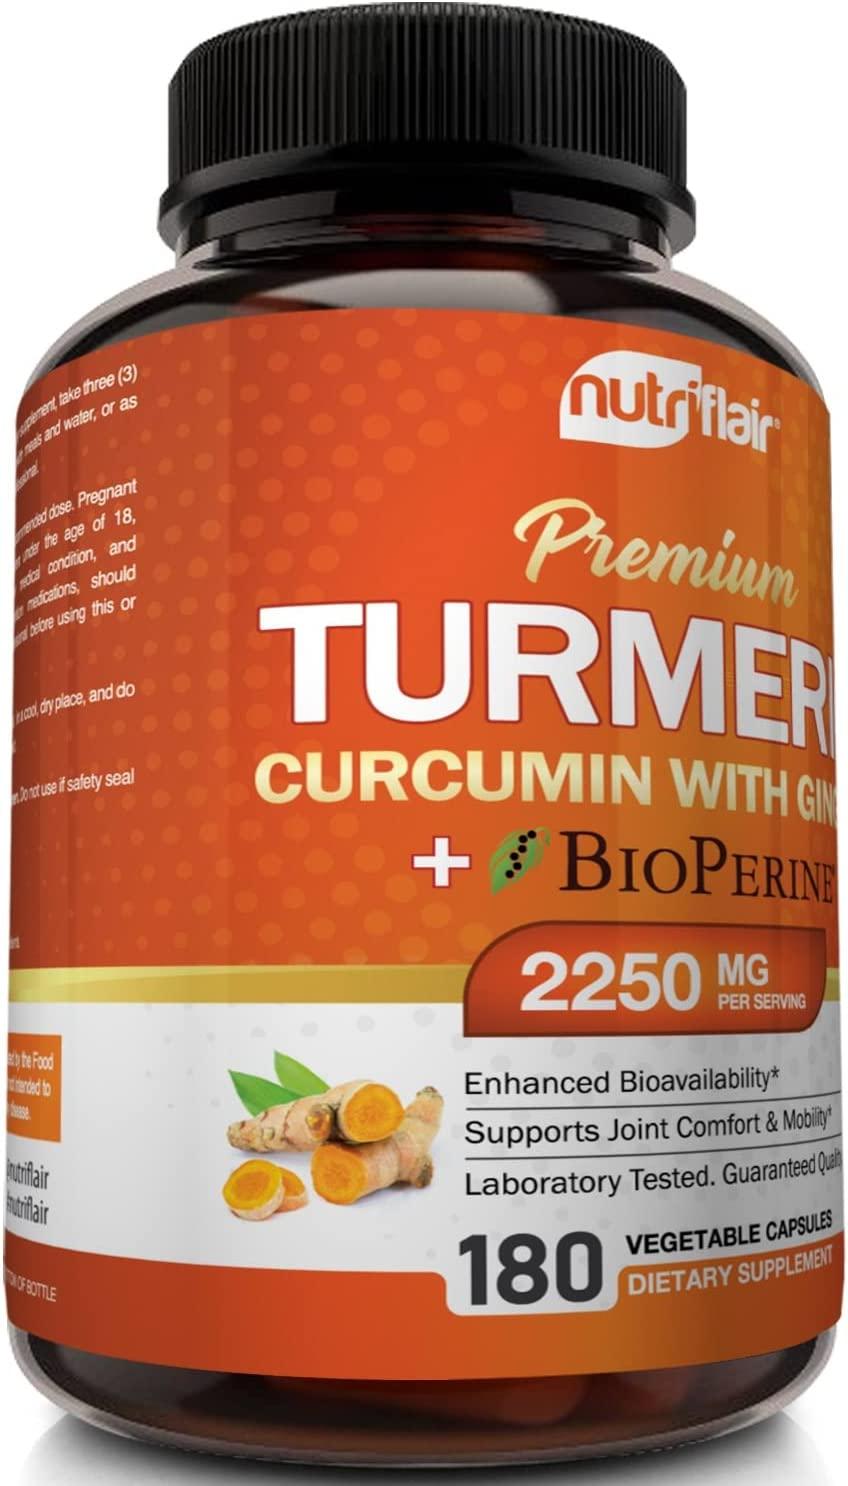 Turmeric Curcumin With Ginger Bioperine Black Pepper Supplement Anti